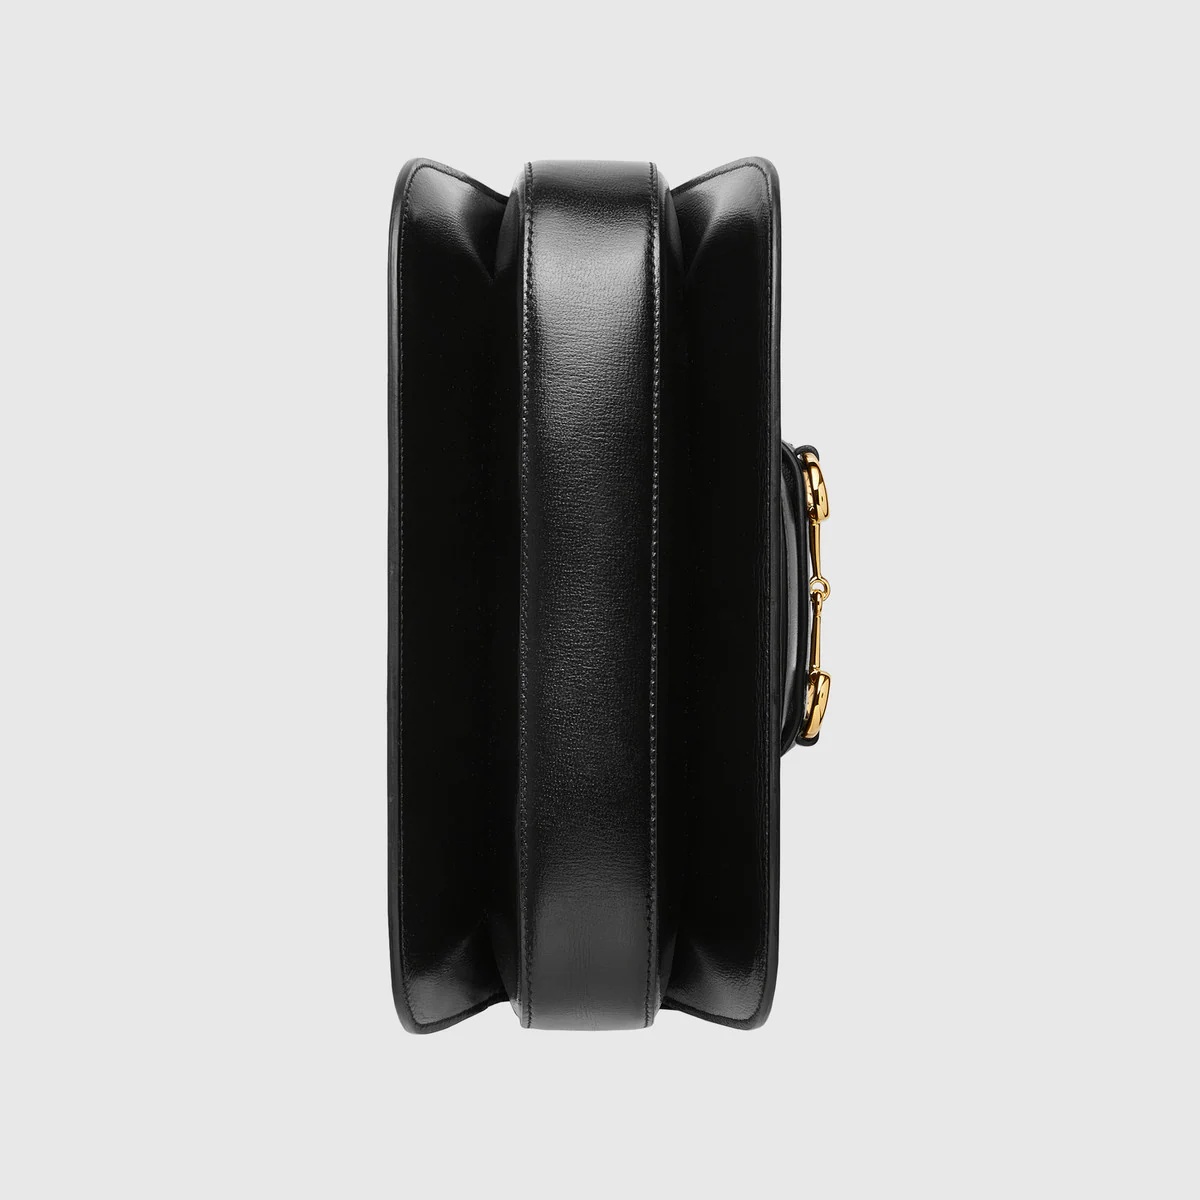 Gucci Horsebit 1955 shoulder bag - 7